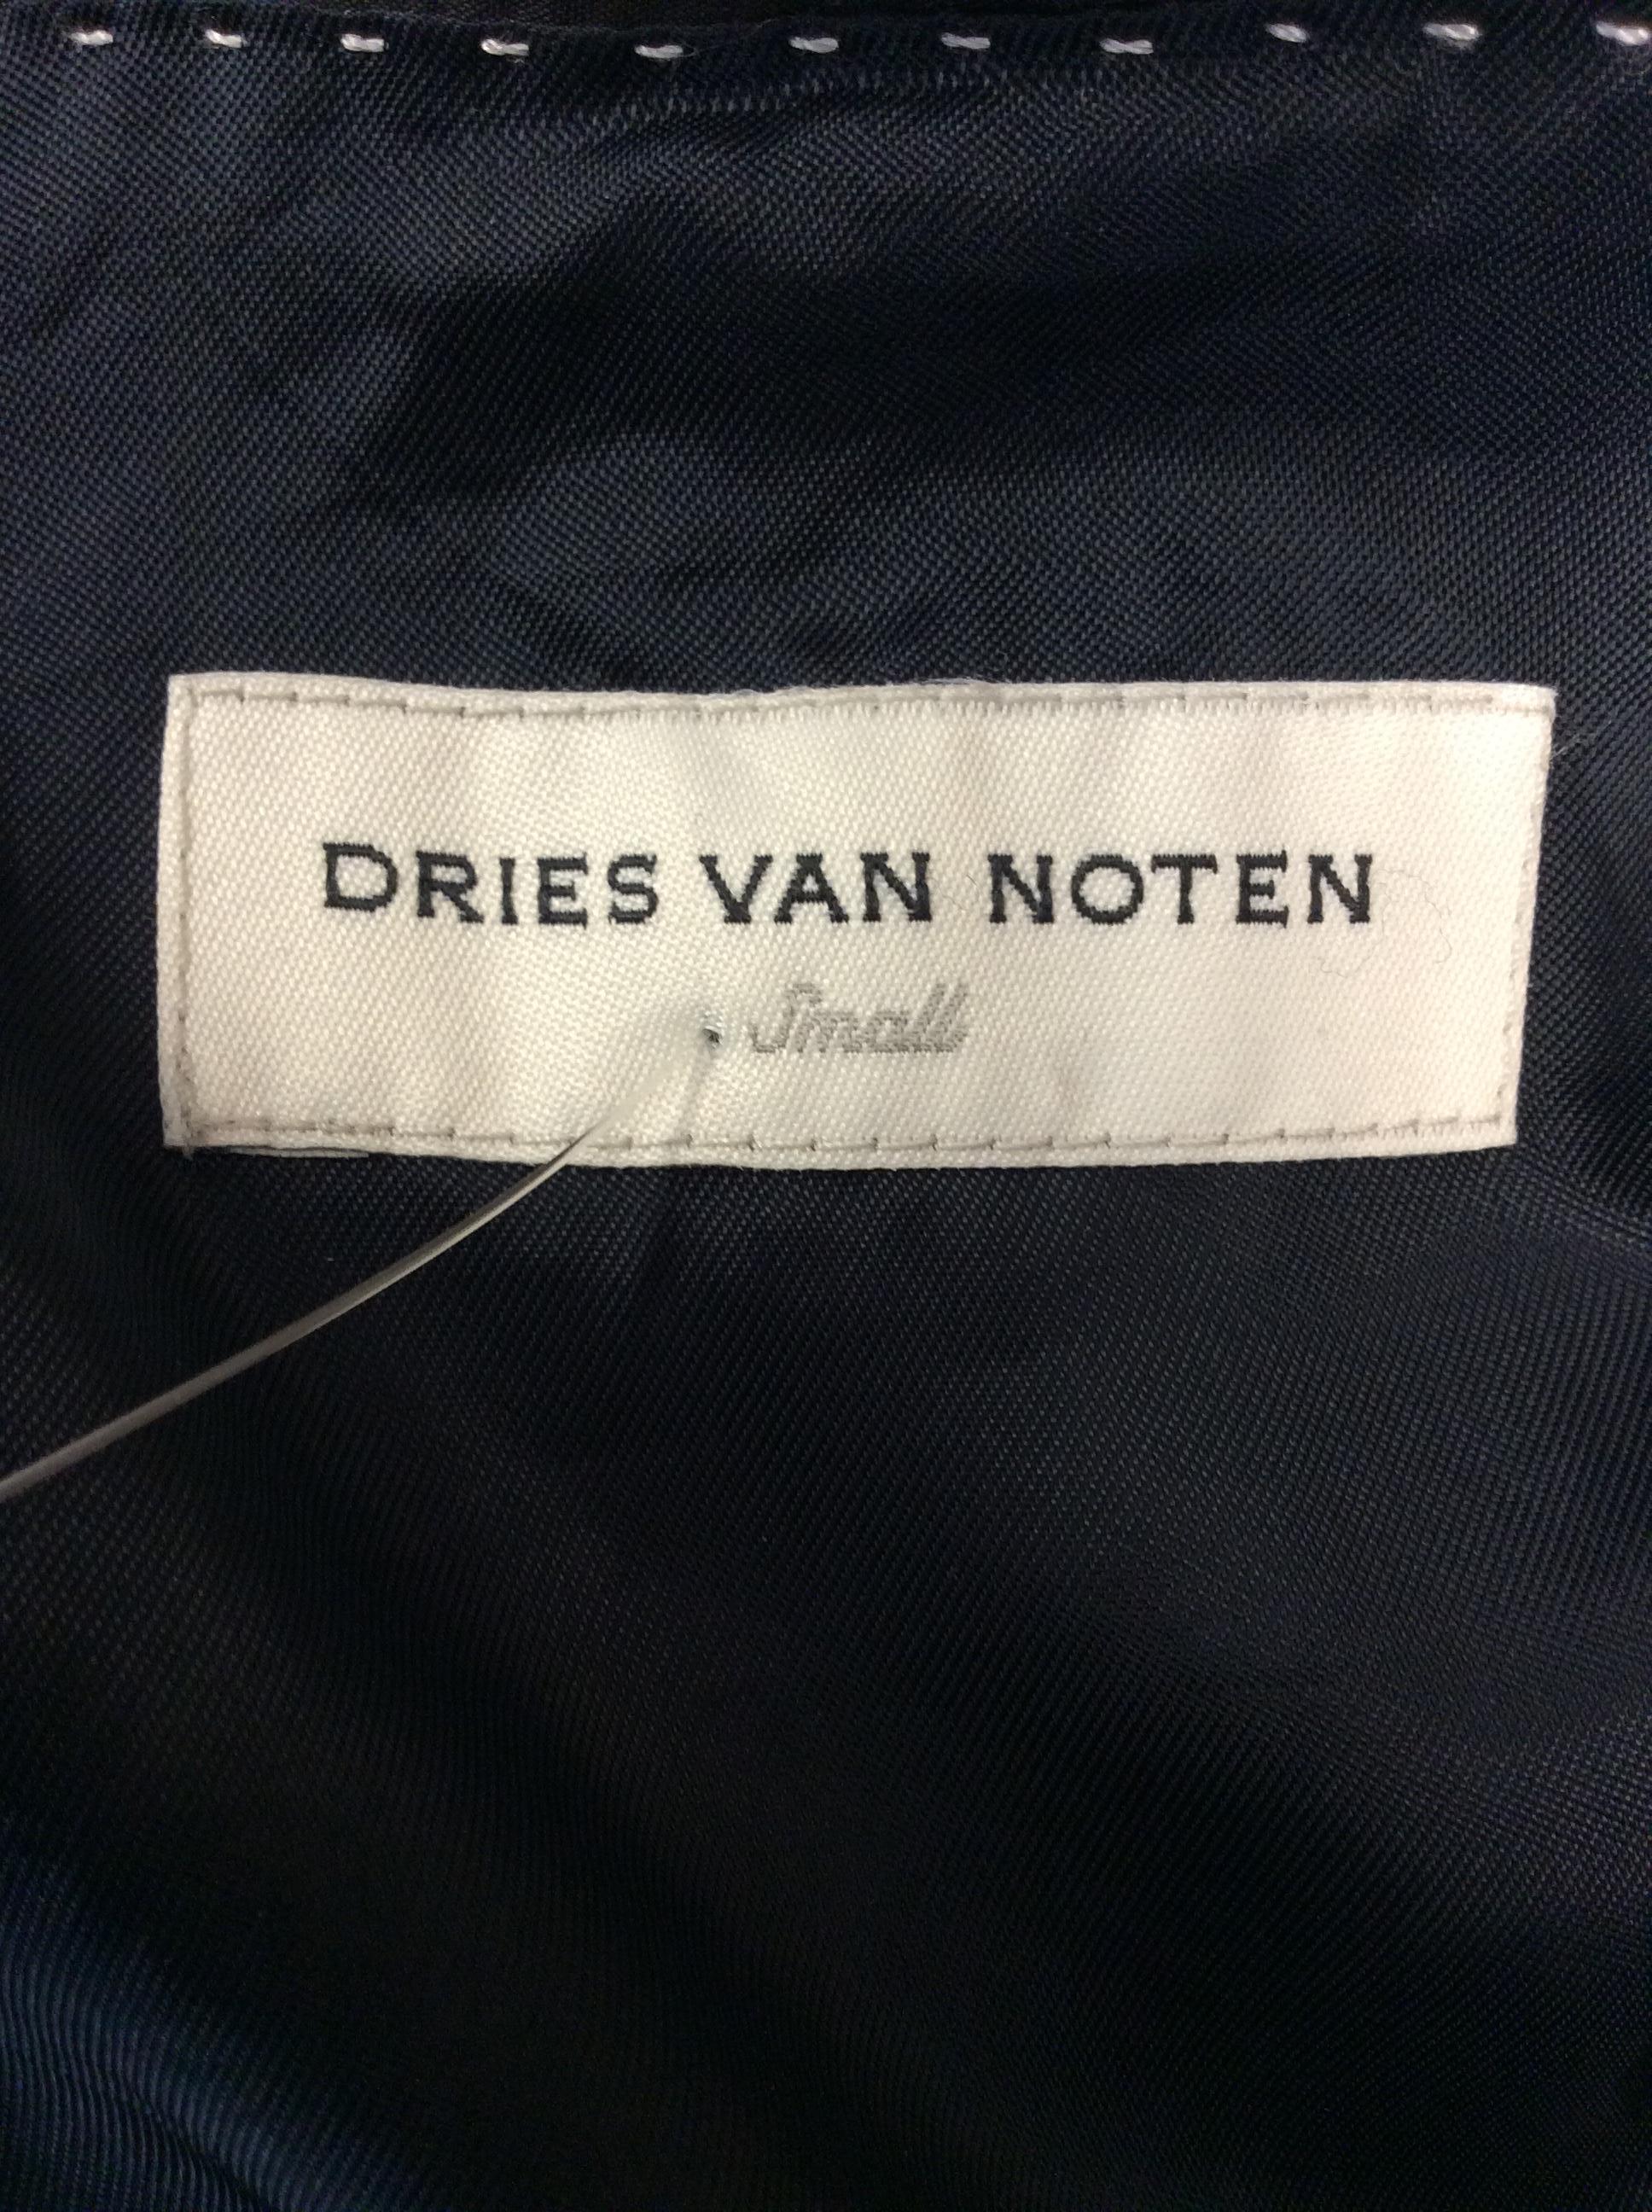 Dries Van Noten Black Trench Coat For Sale 1